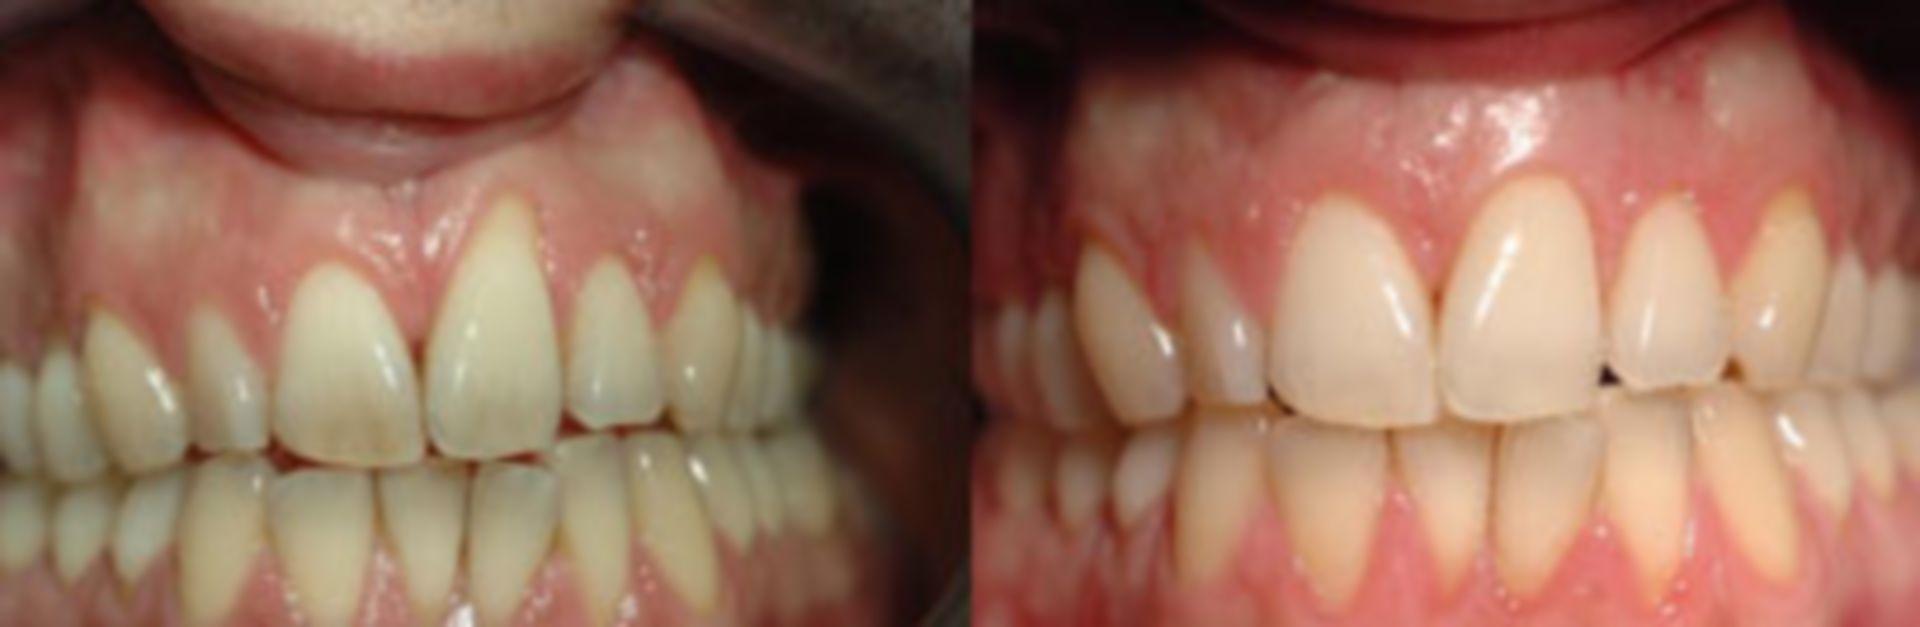 Intraoraler Befund bei Erhebung des Zahnstatus